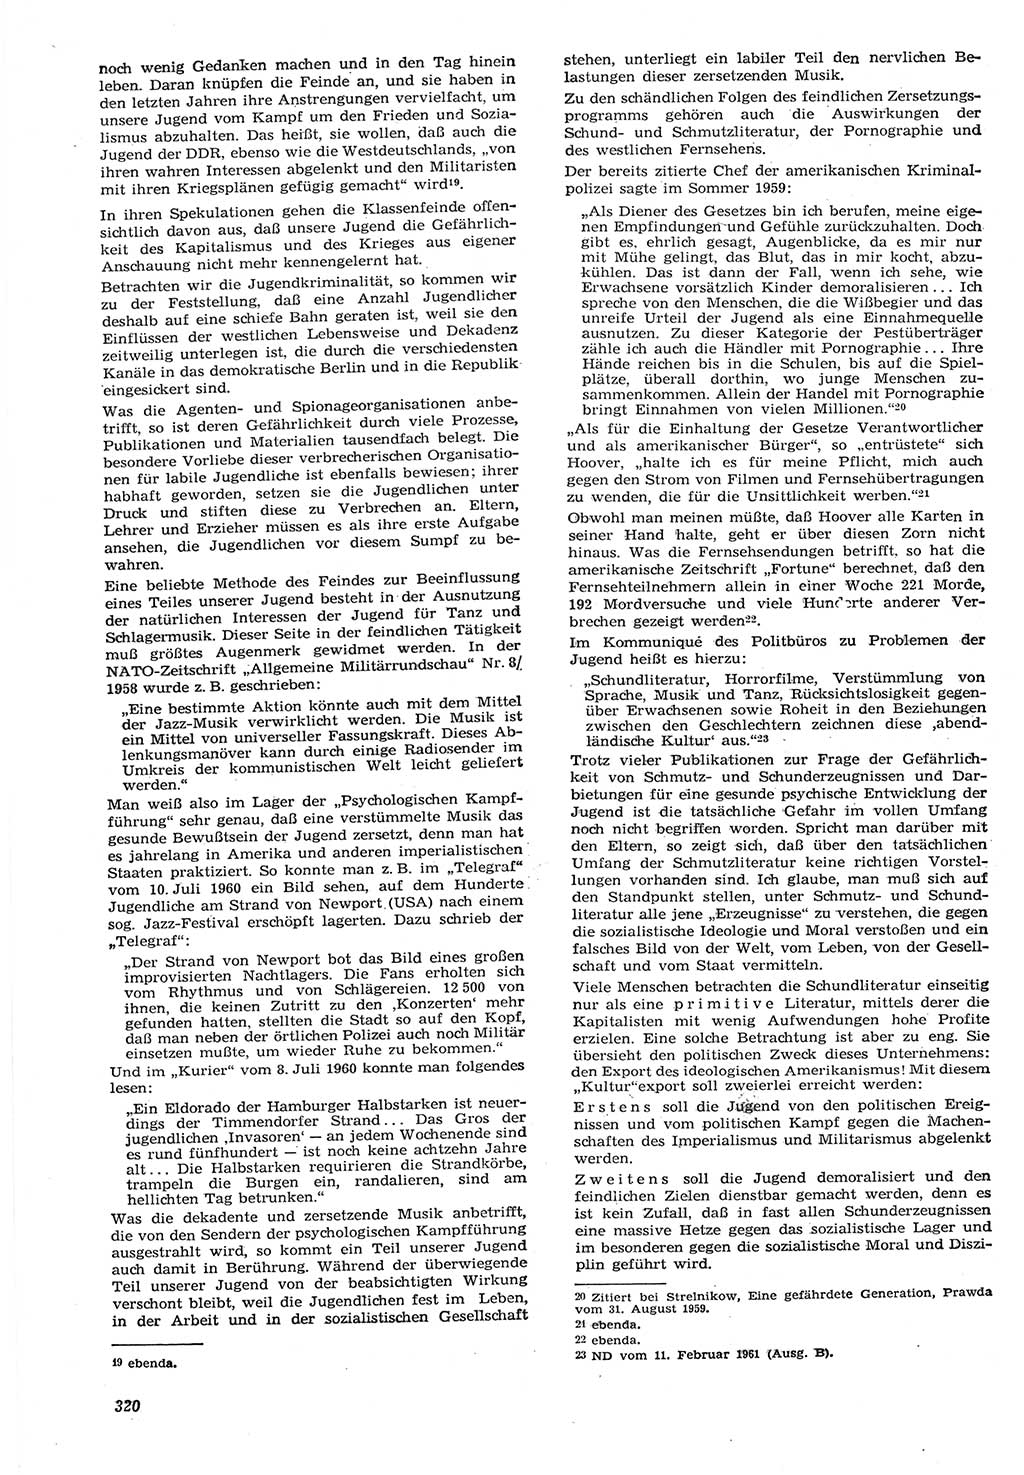 Neue Justiz (NJ), Zeitschrift für Recht und Rechtswissenschaft [Deutsche Demokratische Republik (DDR)], 15. Jahrgang 1961, Seite 320 (NJ DDR 1961, S. 320)